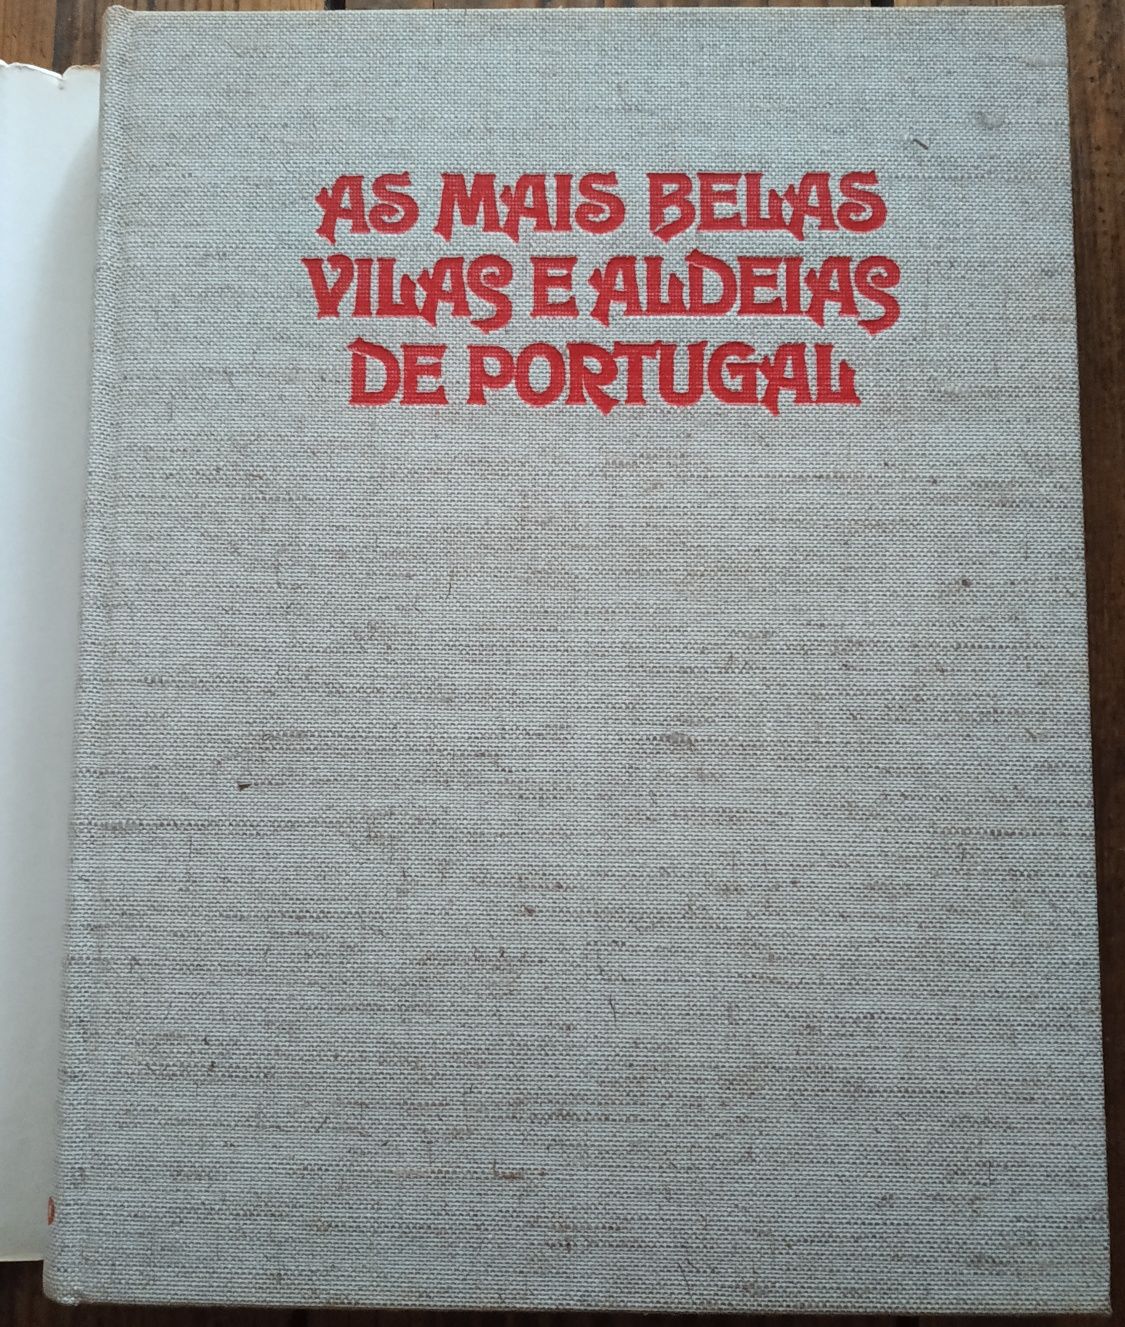 As Mais Belas Vilas e Aldeias de Portugal

de Augusto Cabrita e Júlio